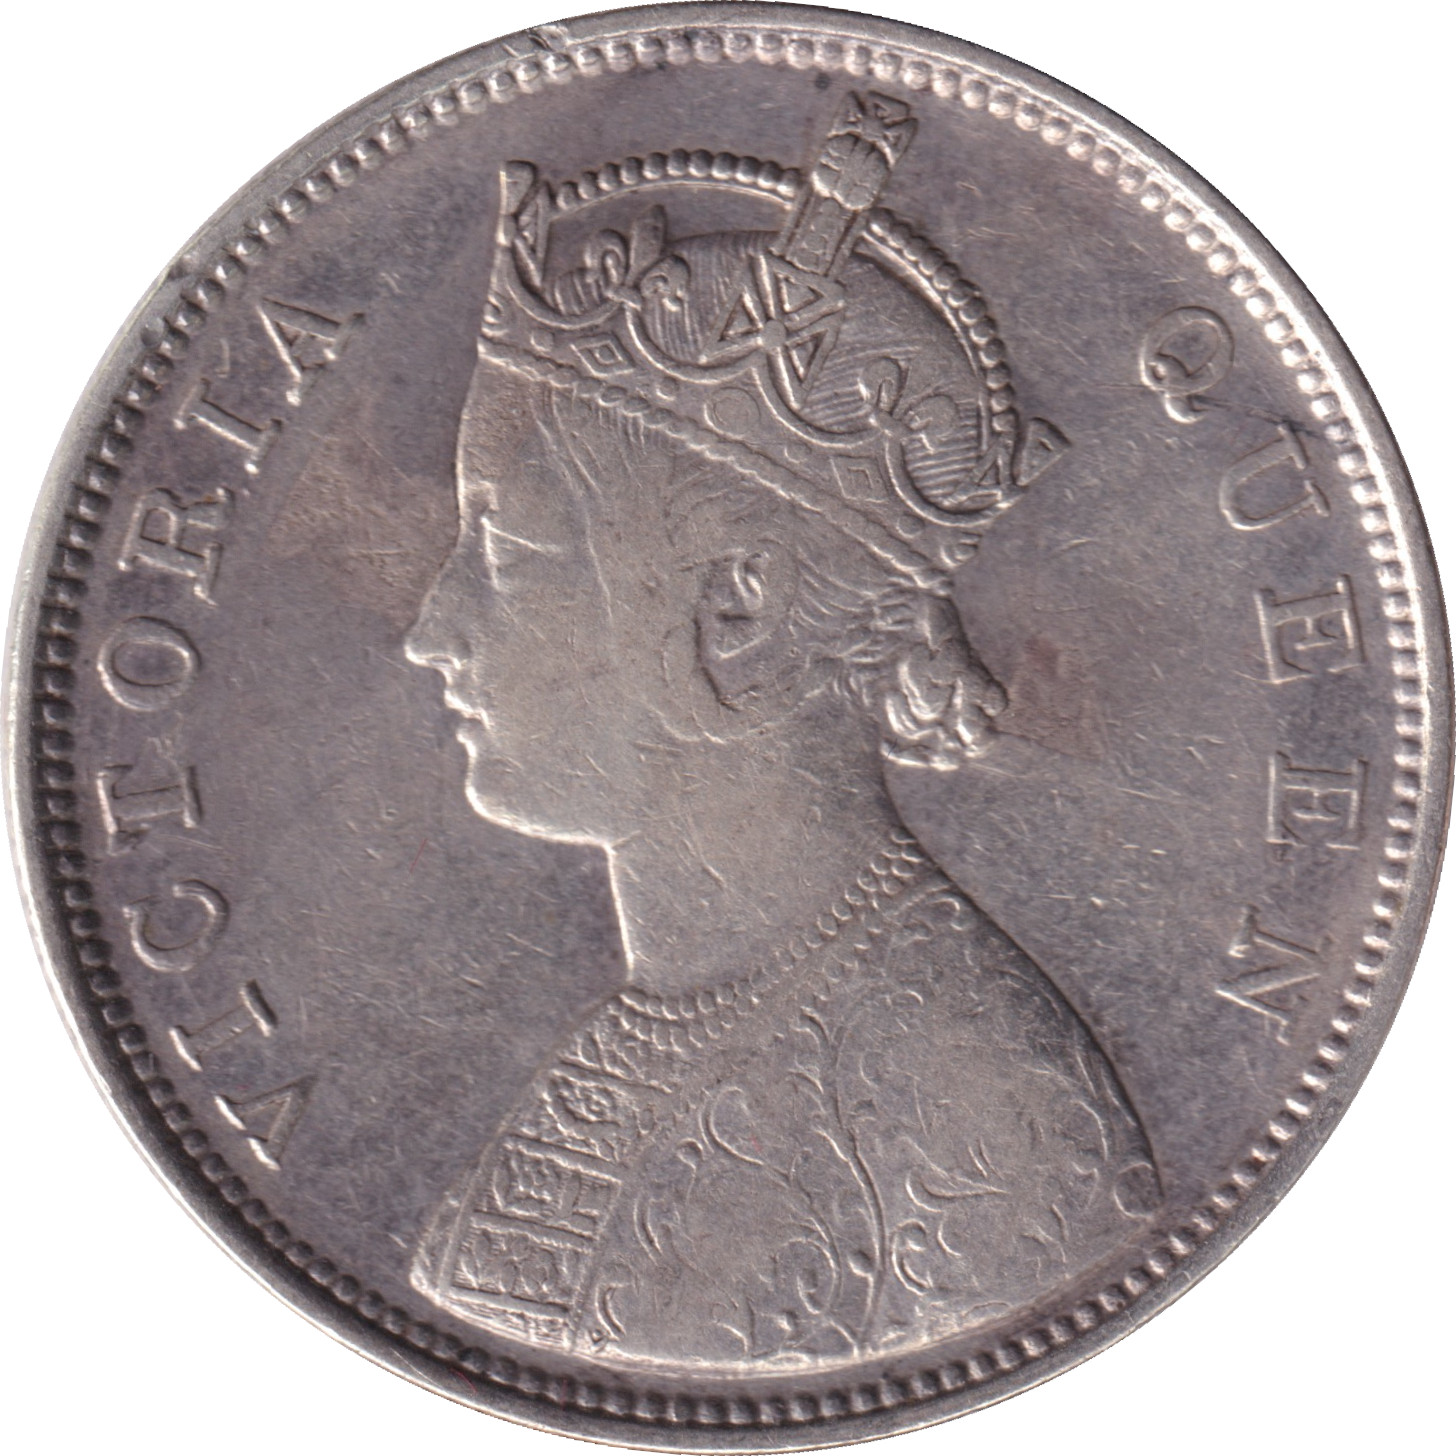 1 rupee - Victoria Queen